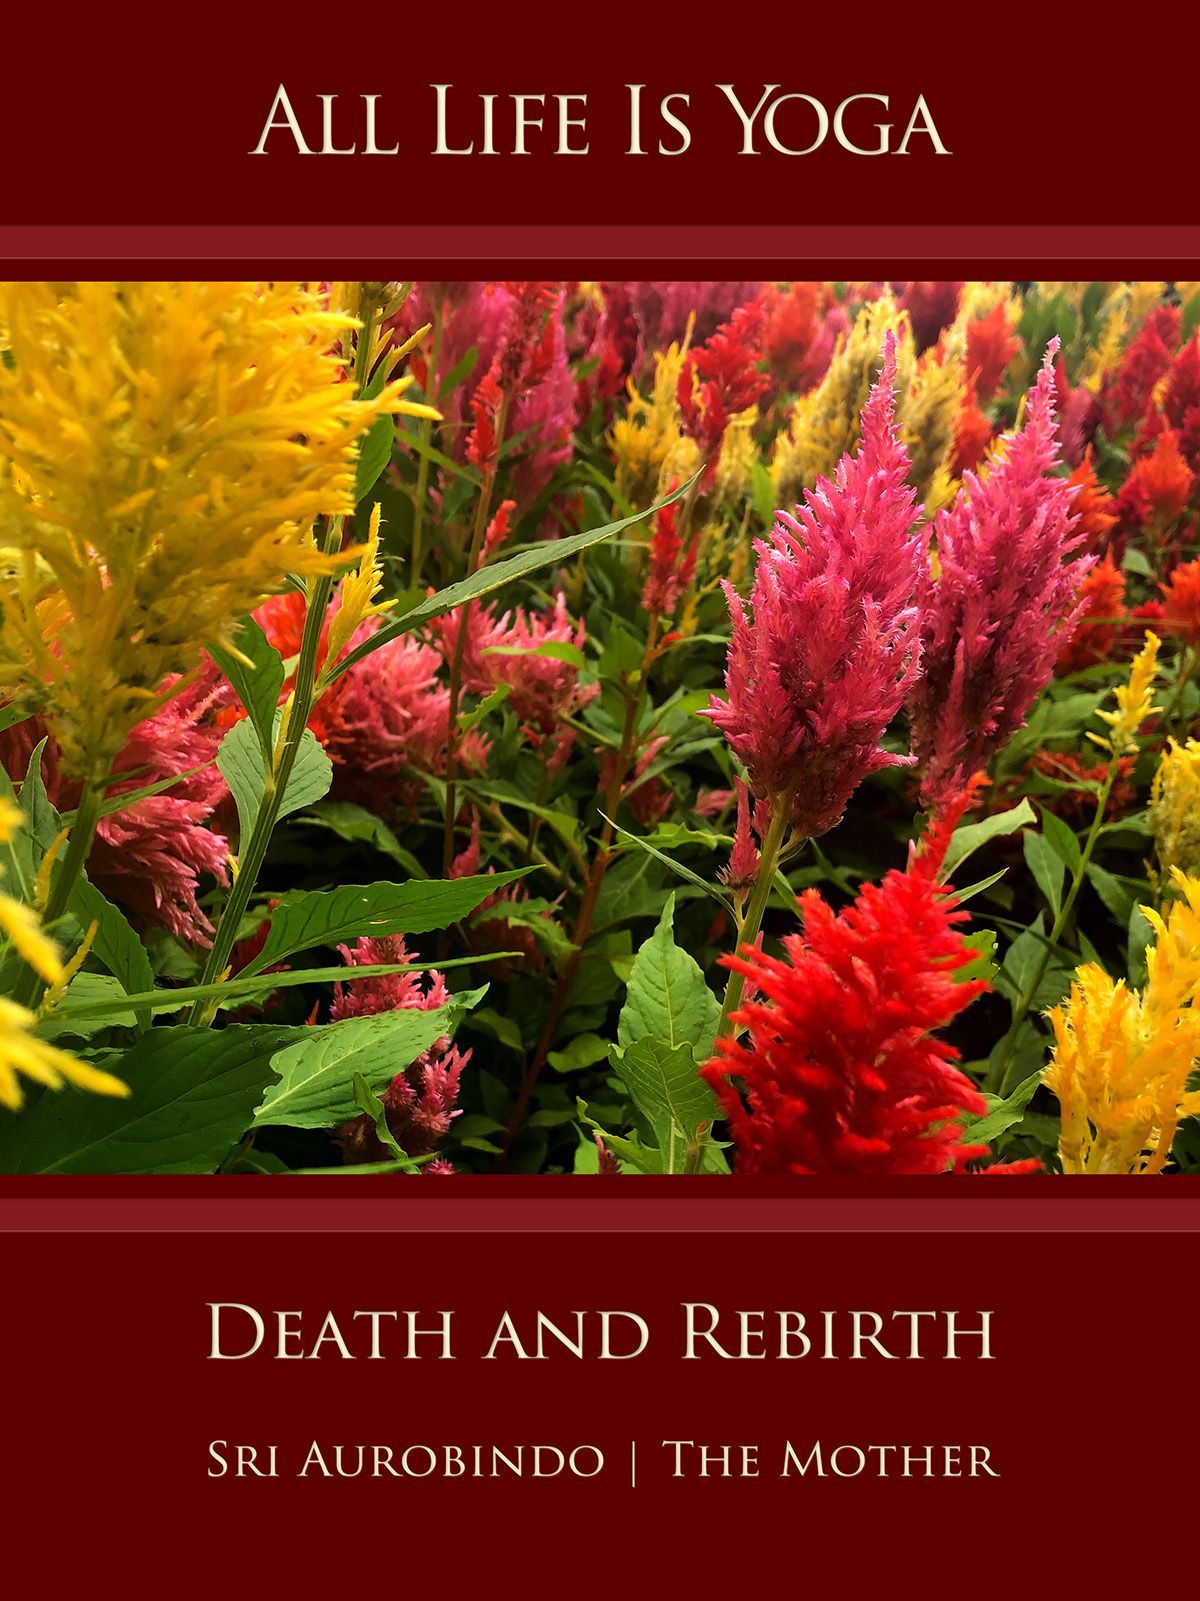 Death and Rebirth